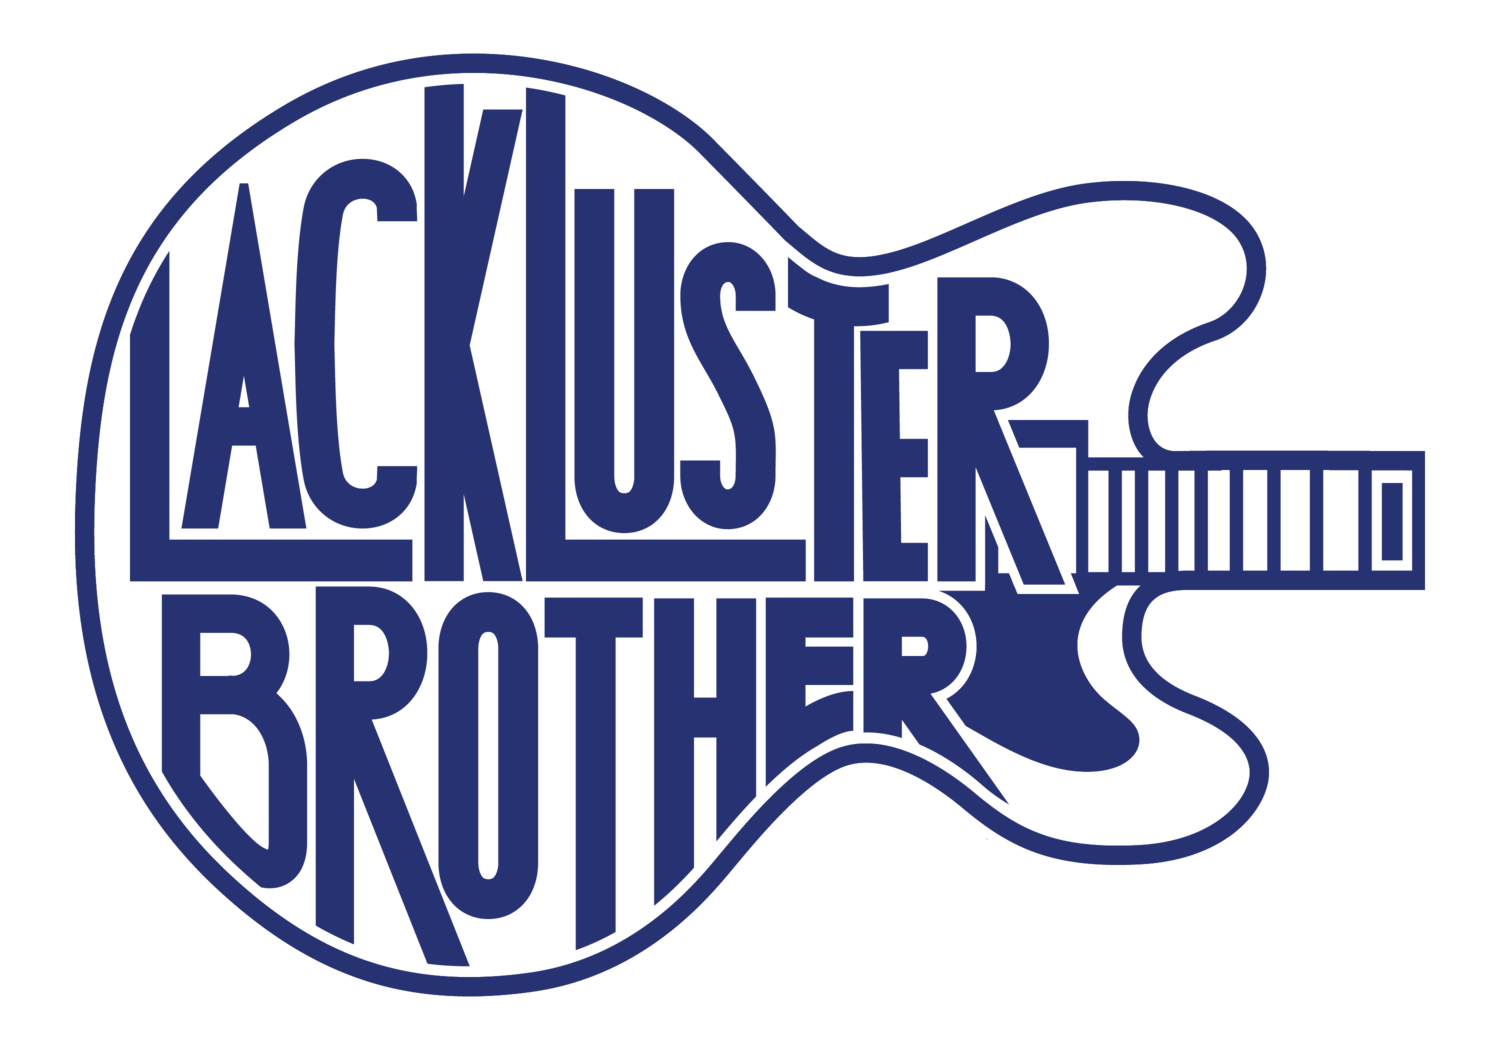 Lackluster Brother Logo Sticker